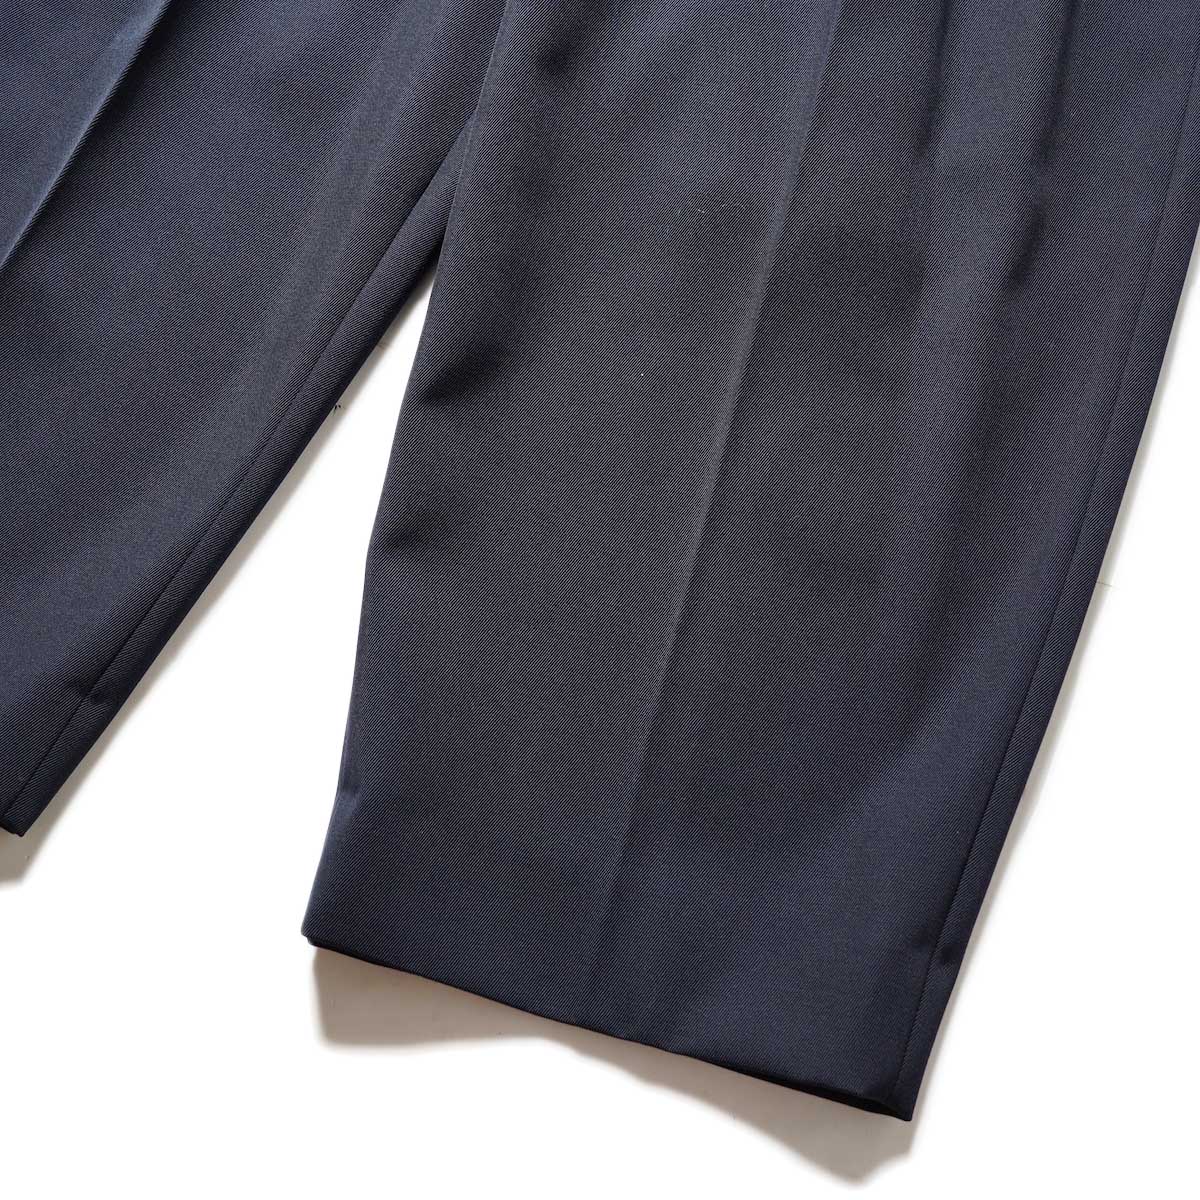 Blurhms / Wool Surge Super Wide Easy Slacks (Dark Navy)裾